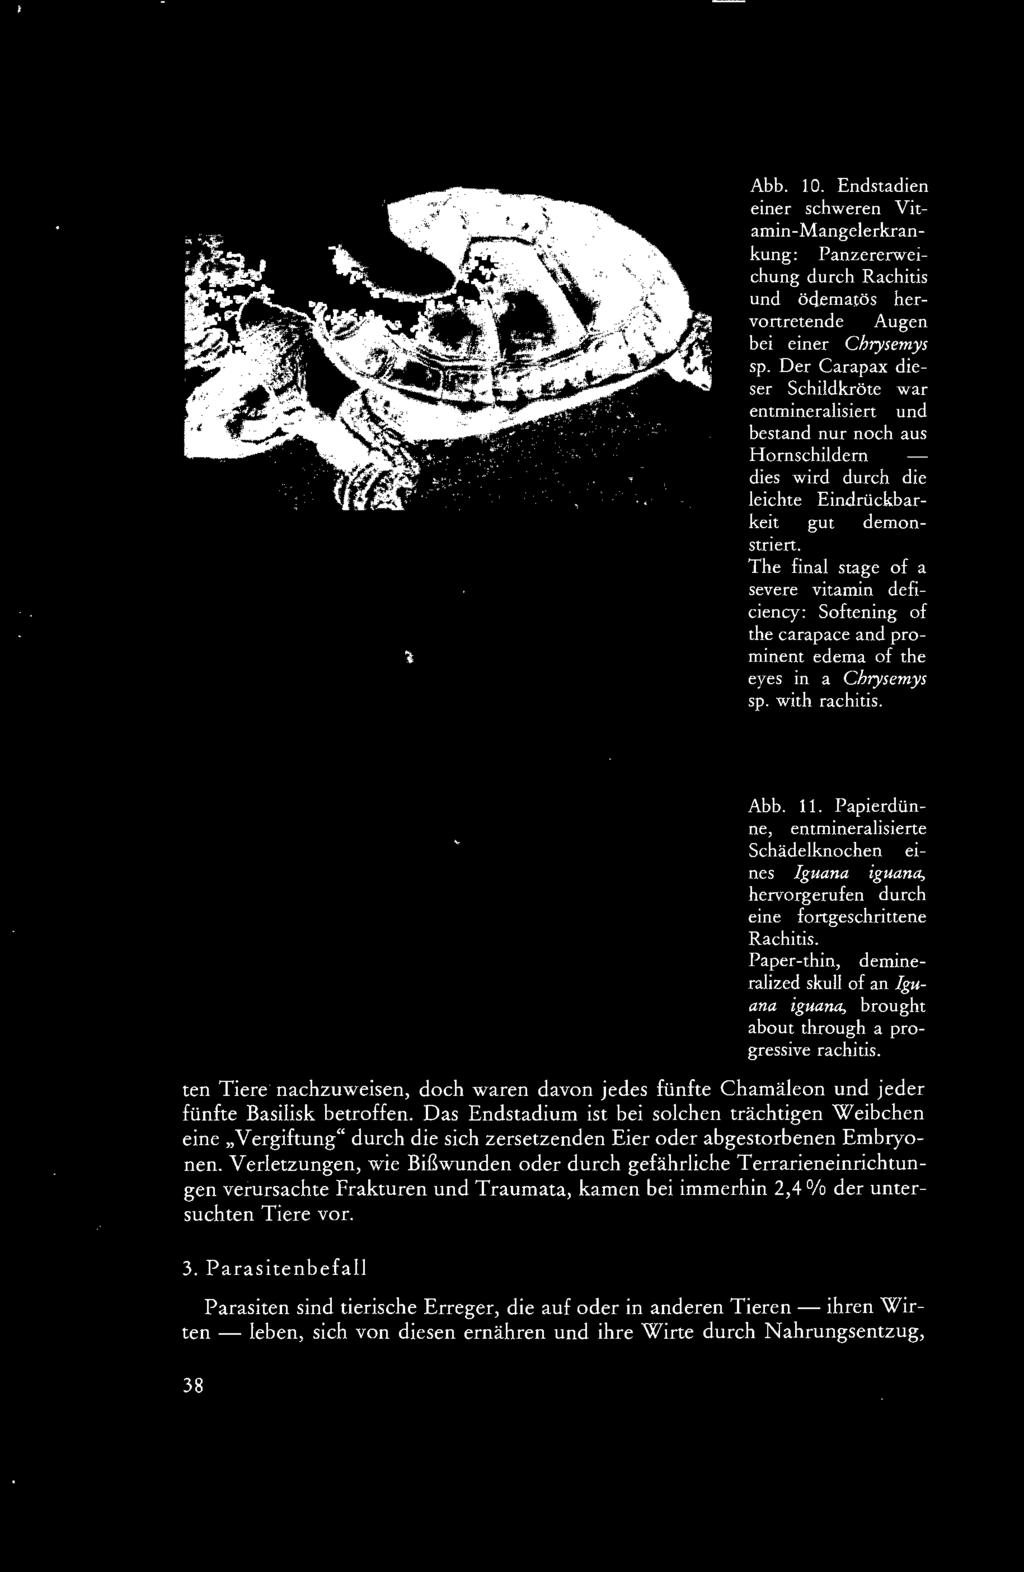 Paper-thin, demineralized skull of an lguana iguana, brought about through a progressive rachitis. ten Tiere nachzuweisen, doch waren davon jedes fünfte Chamäleon und jeder fünfte Basilisk betroffen.